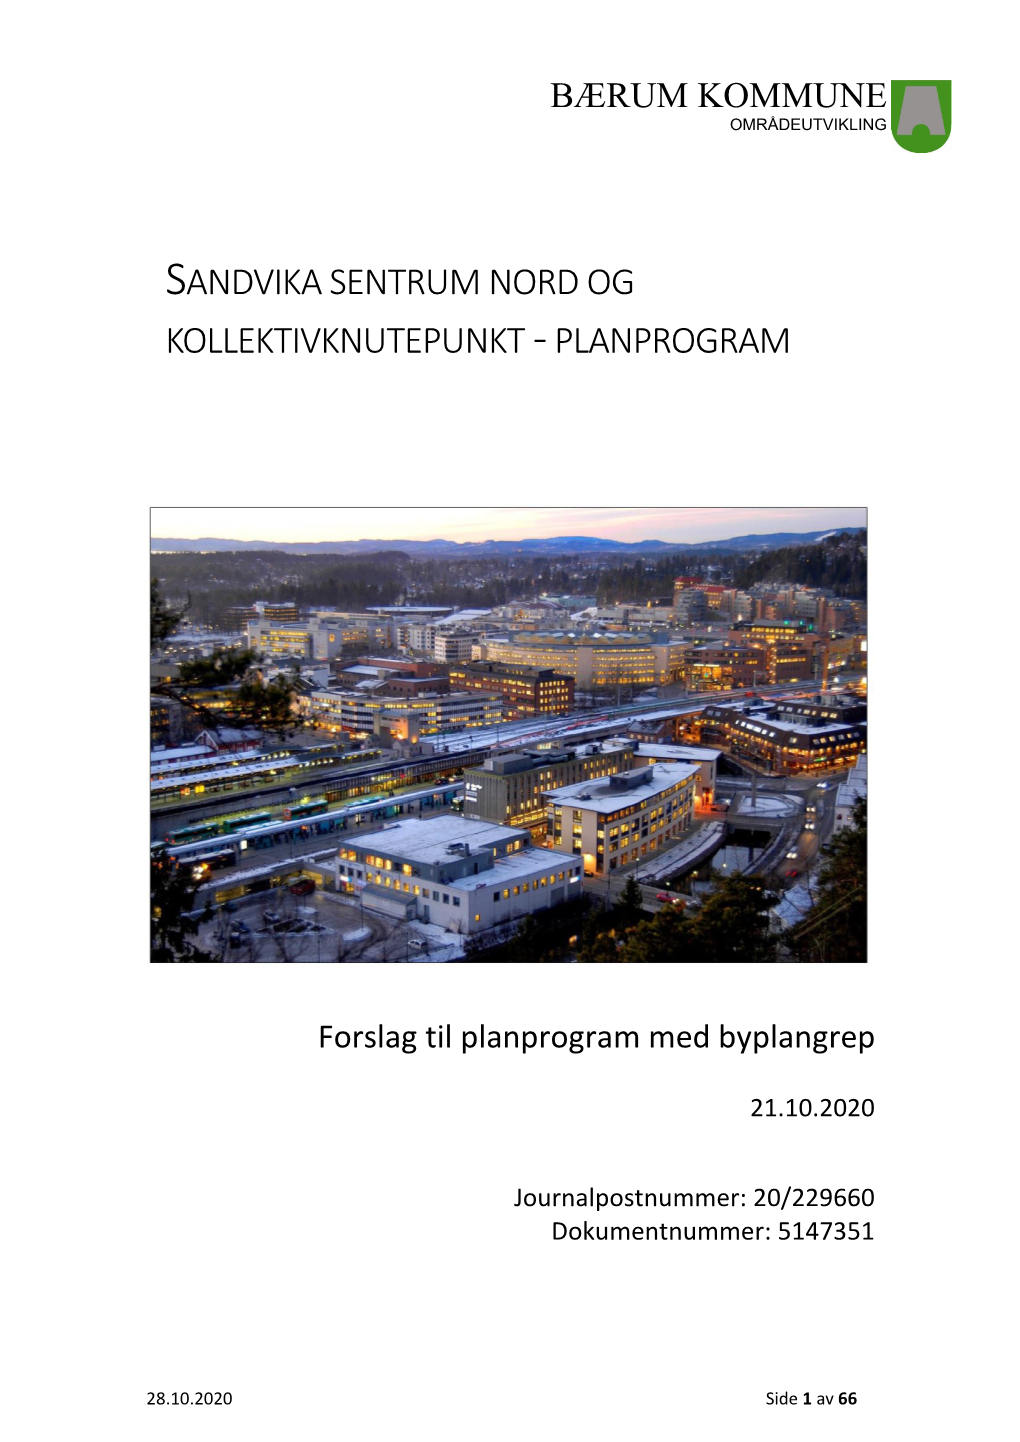 Planprogram for Sandvika Nord Med Kollektivknutepunkt